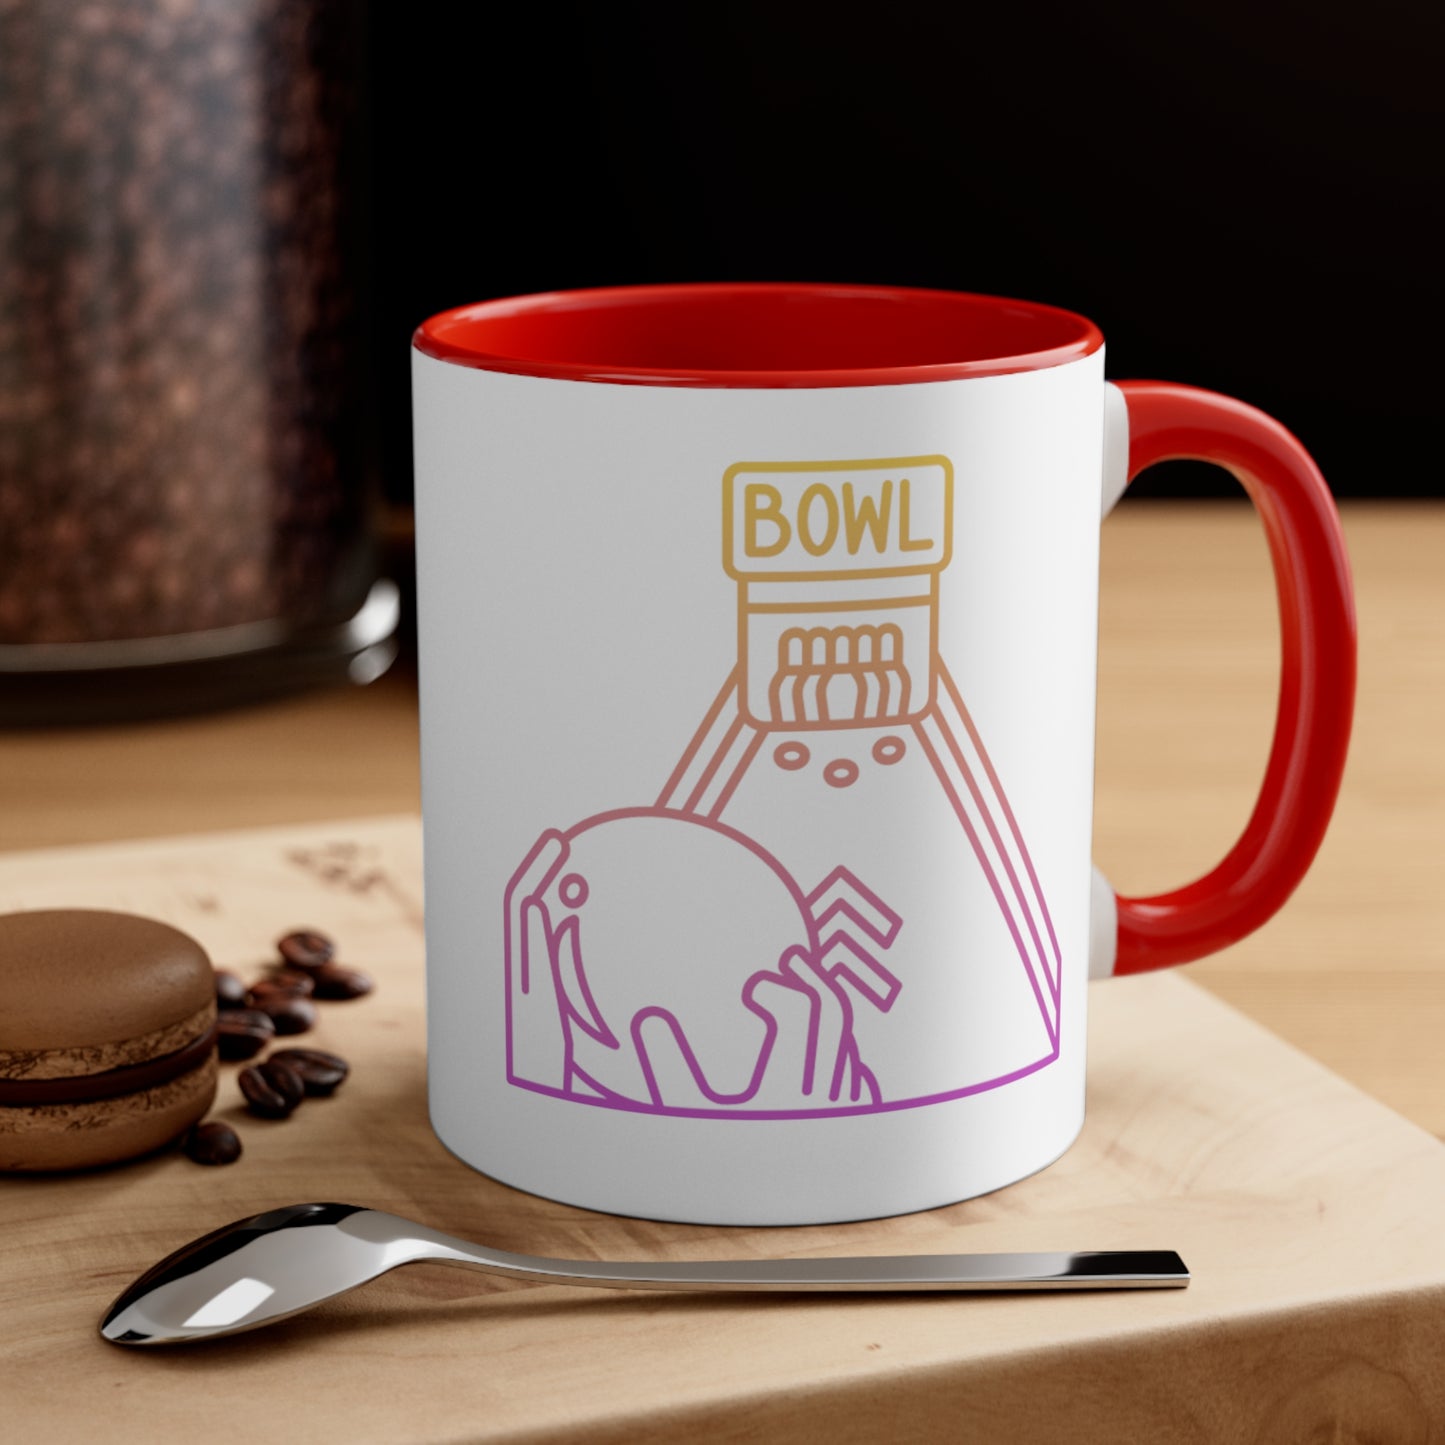 Accent Coffee Mug, 11oz: Bowling White